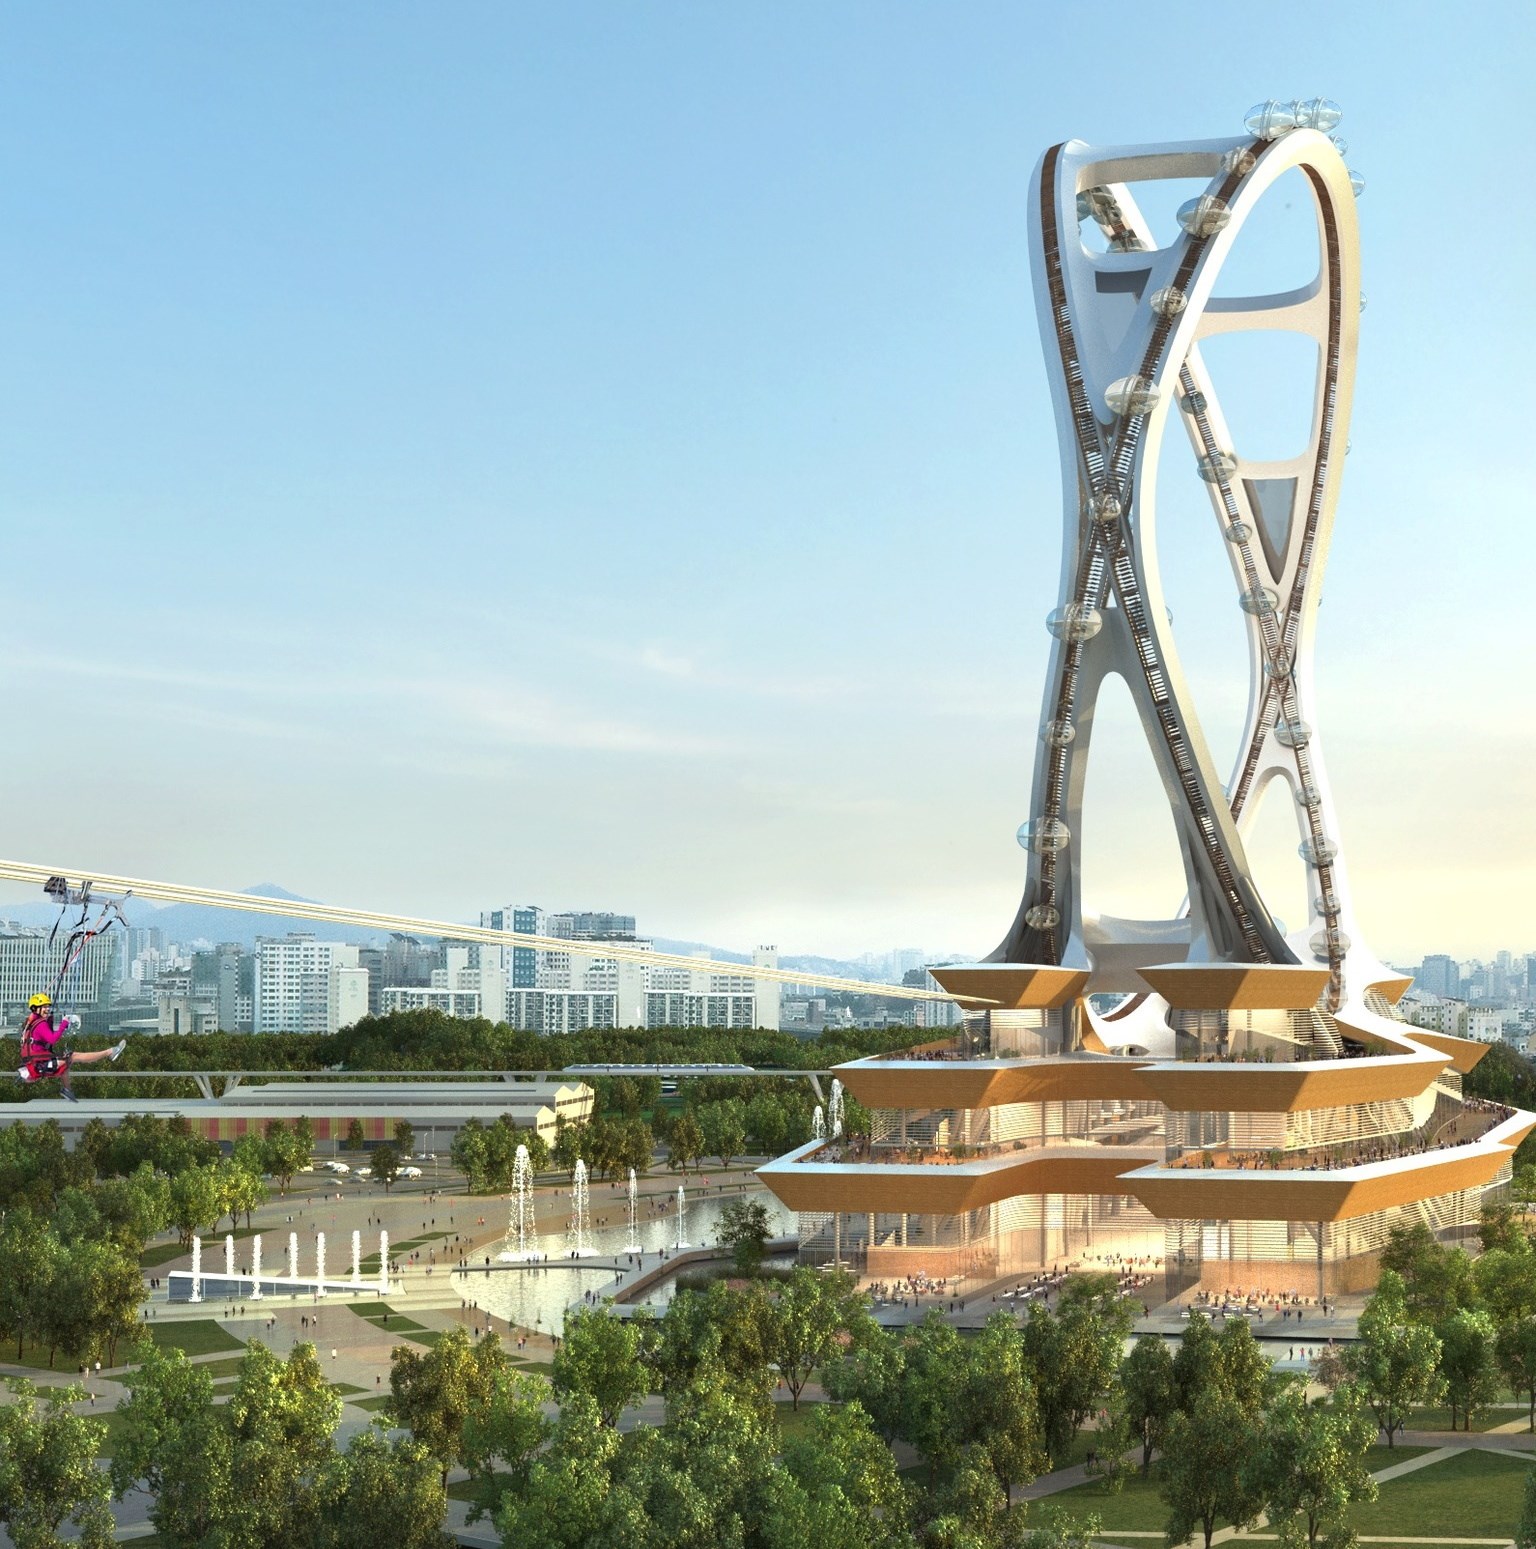 Seul'de, dünyanın en büyük kolsuz dönme dolabı inşa edilecek